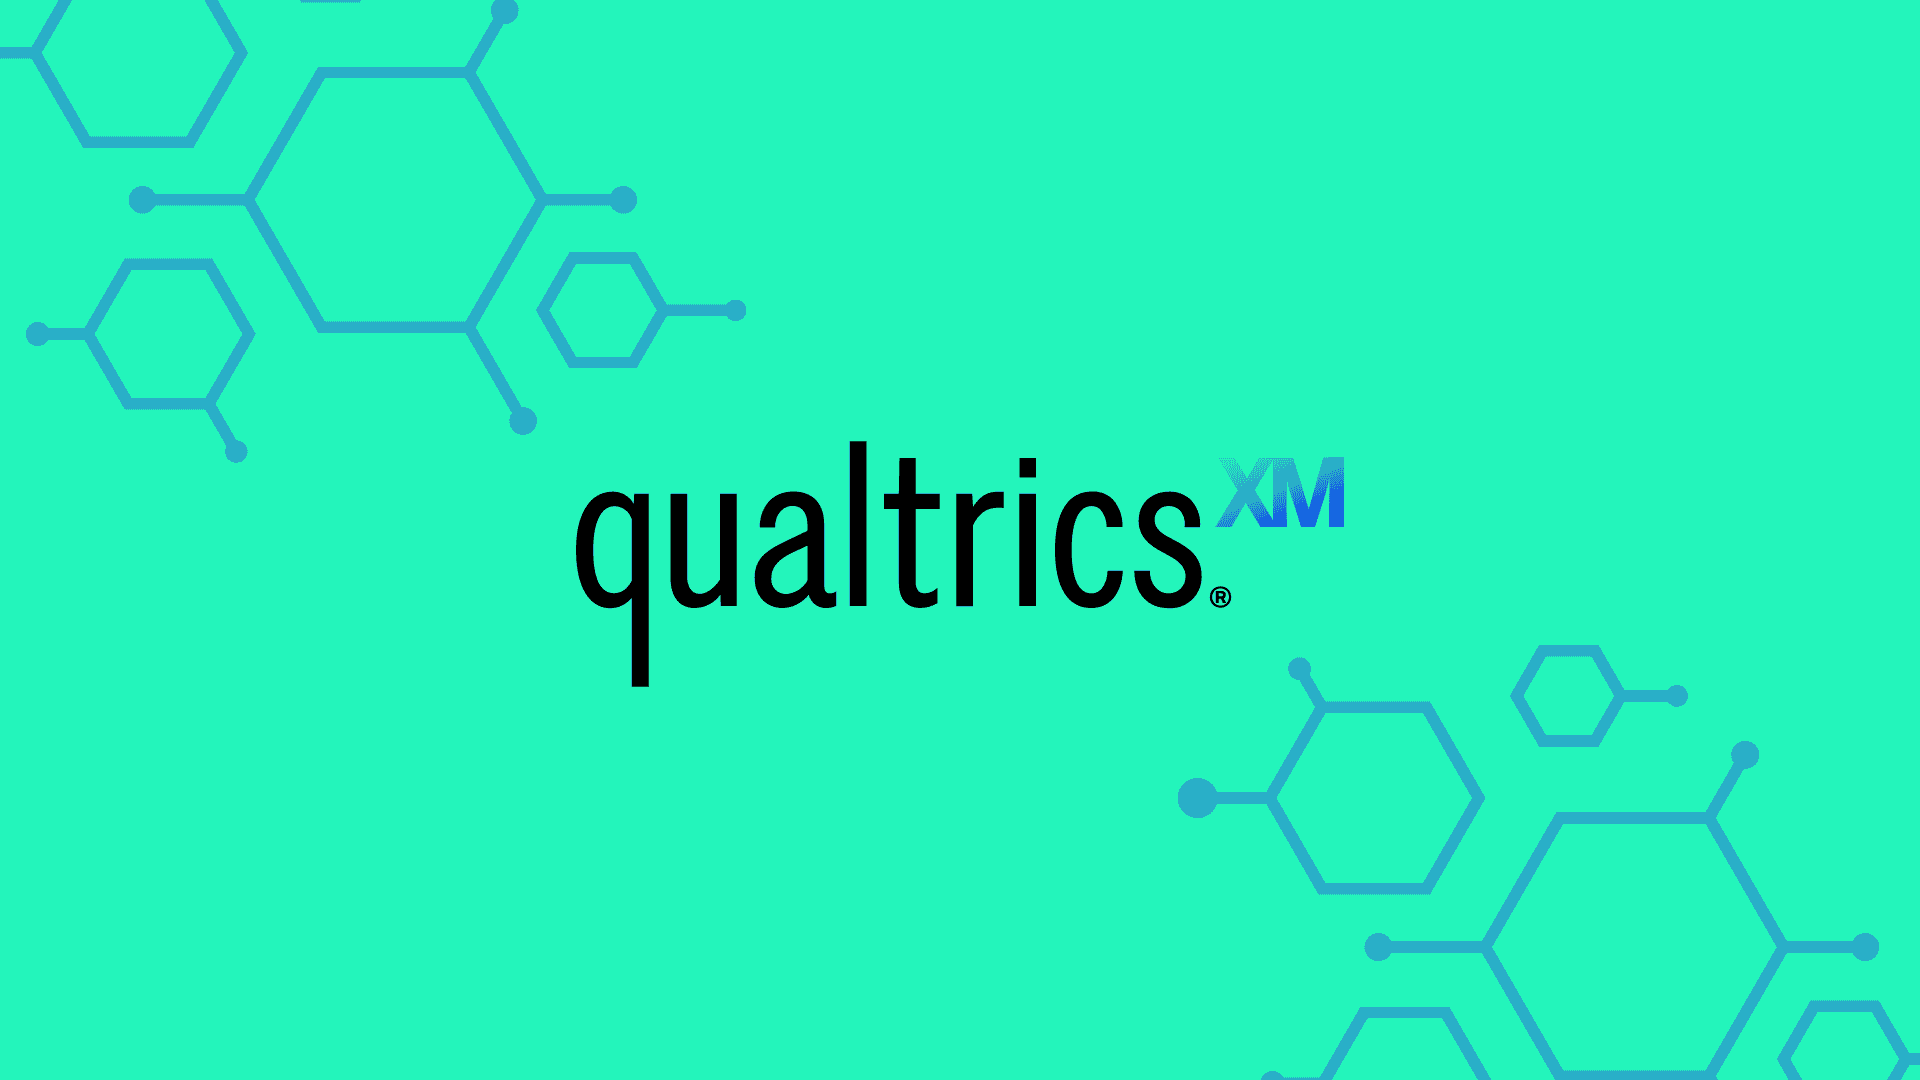 Qualtrics Logo